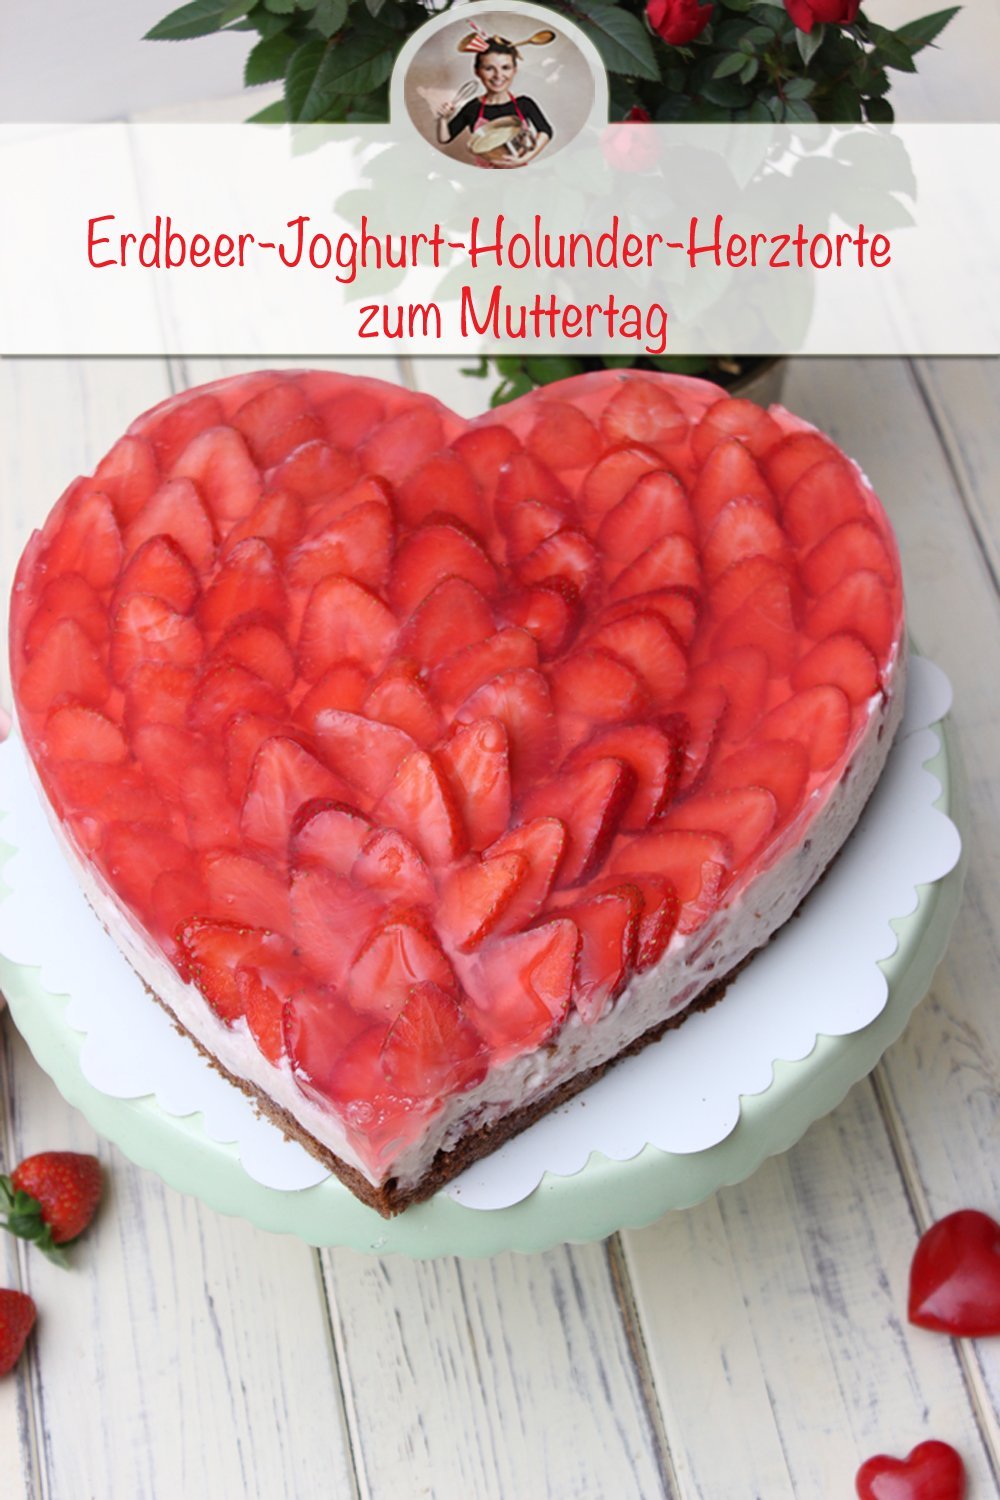 Erdbeer-Joghurt-Holunder-Herztorte zum Muttertag